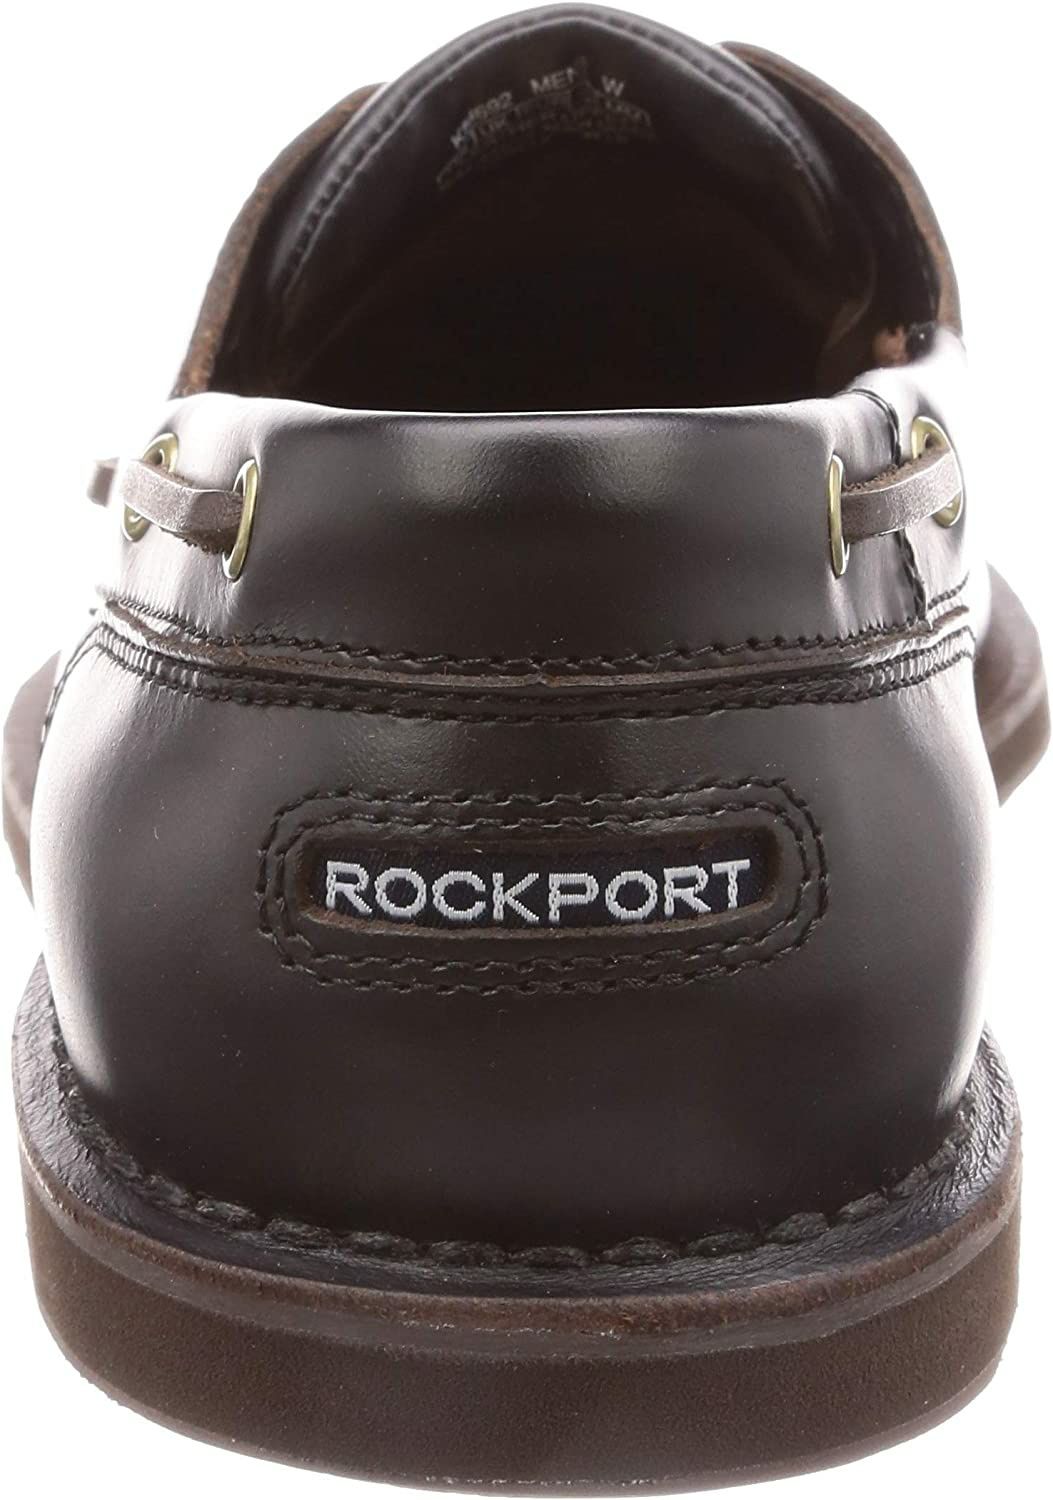 [Novo] Sapatos de Vela Rockport Perth Pele Castanho Escuro